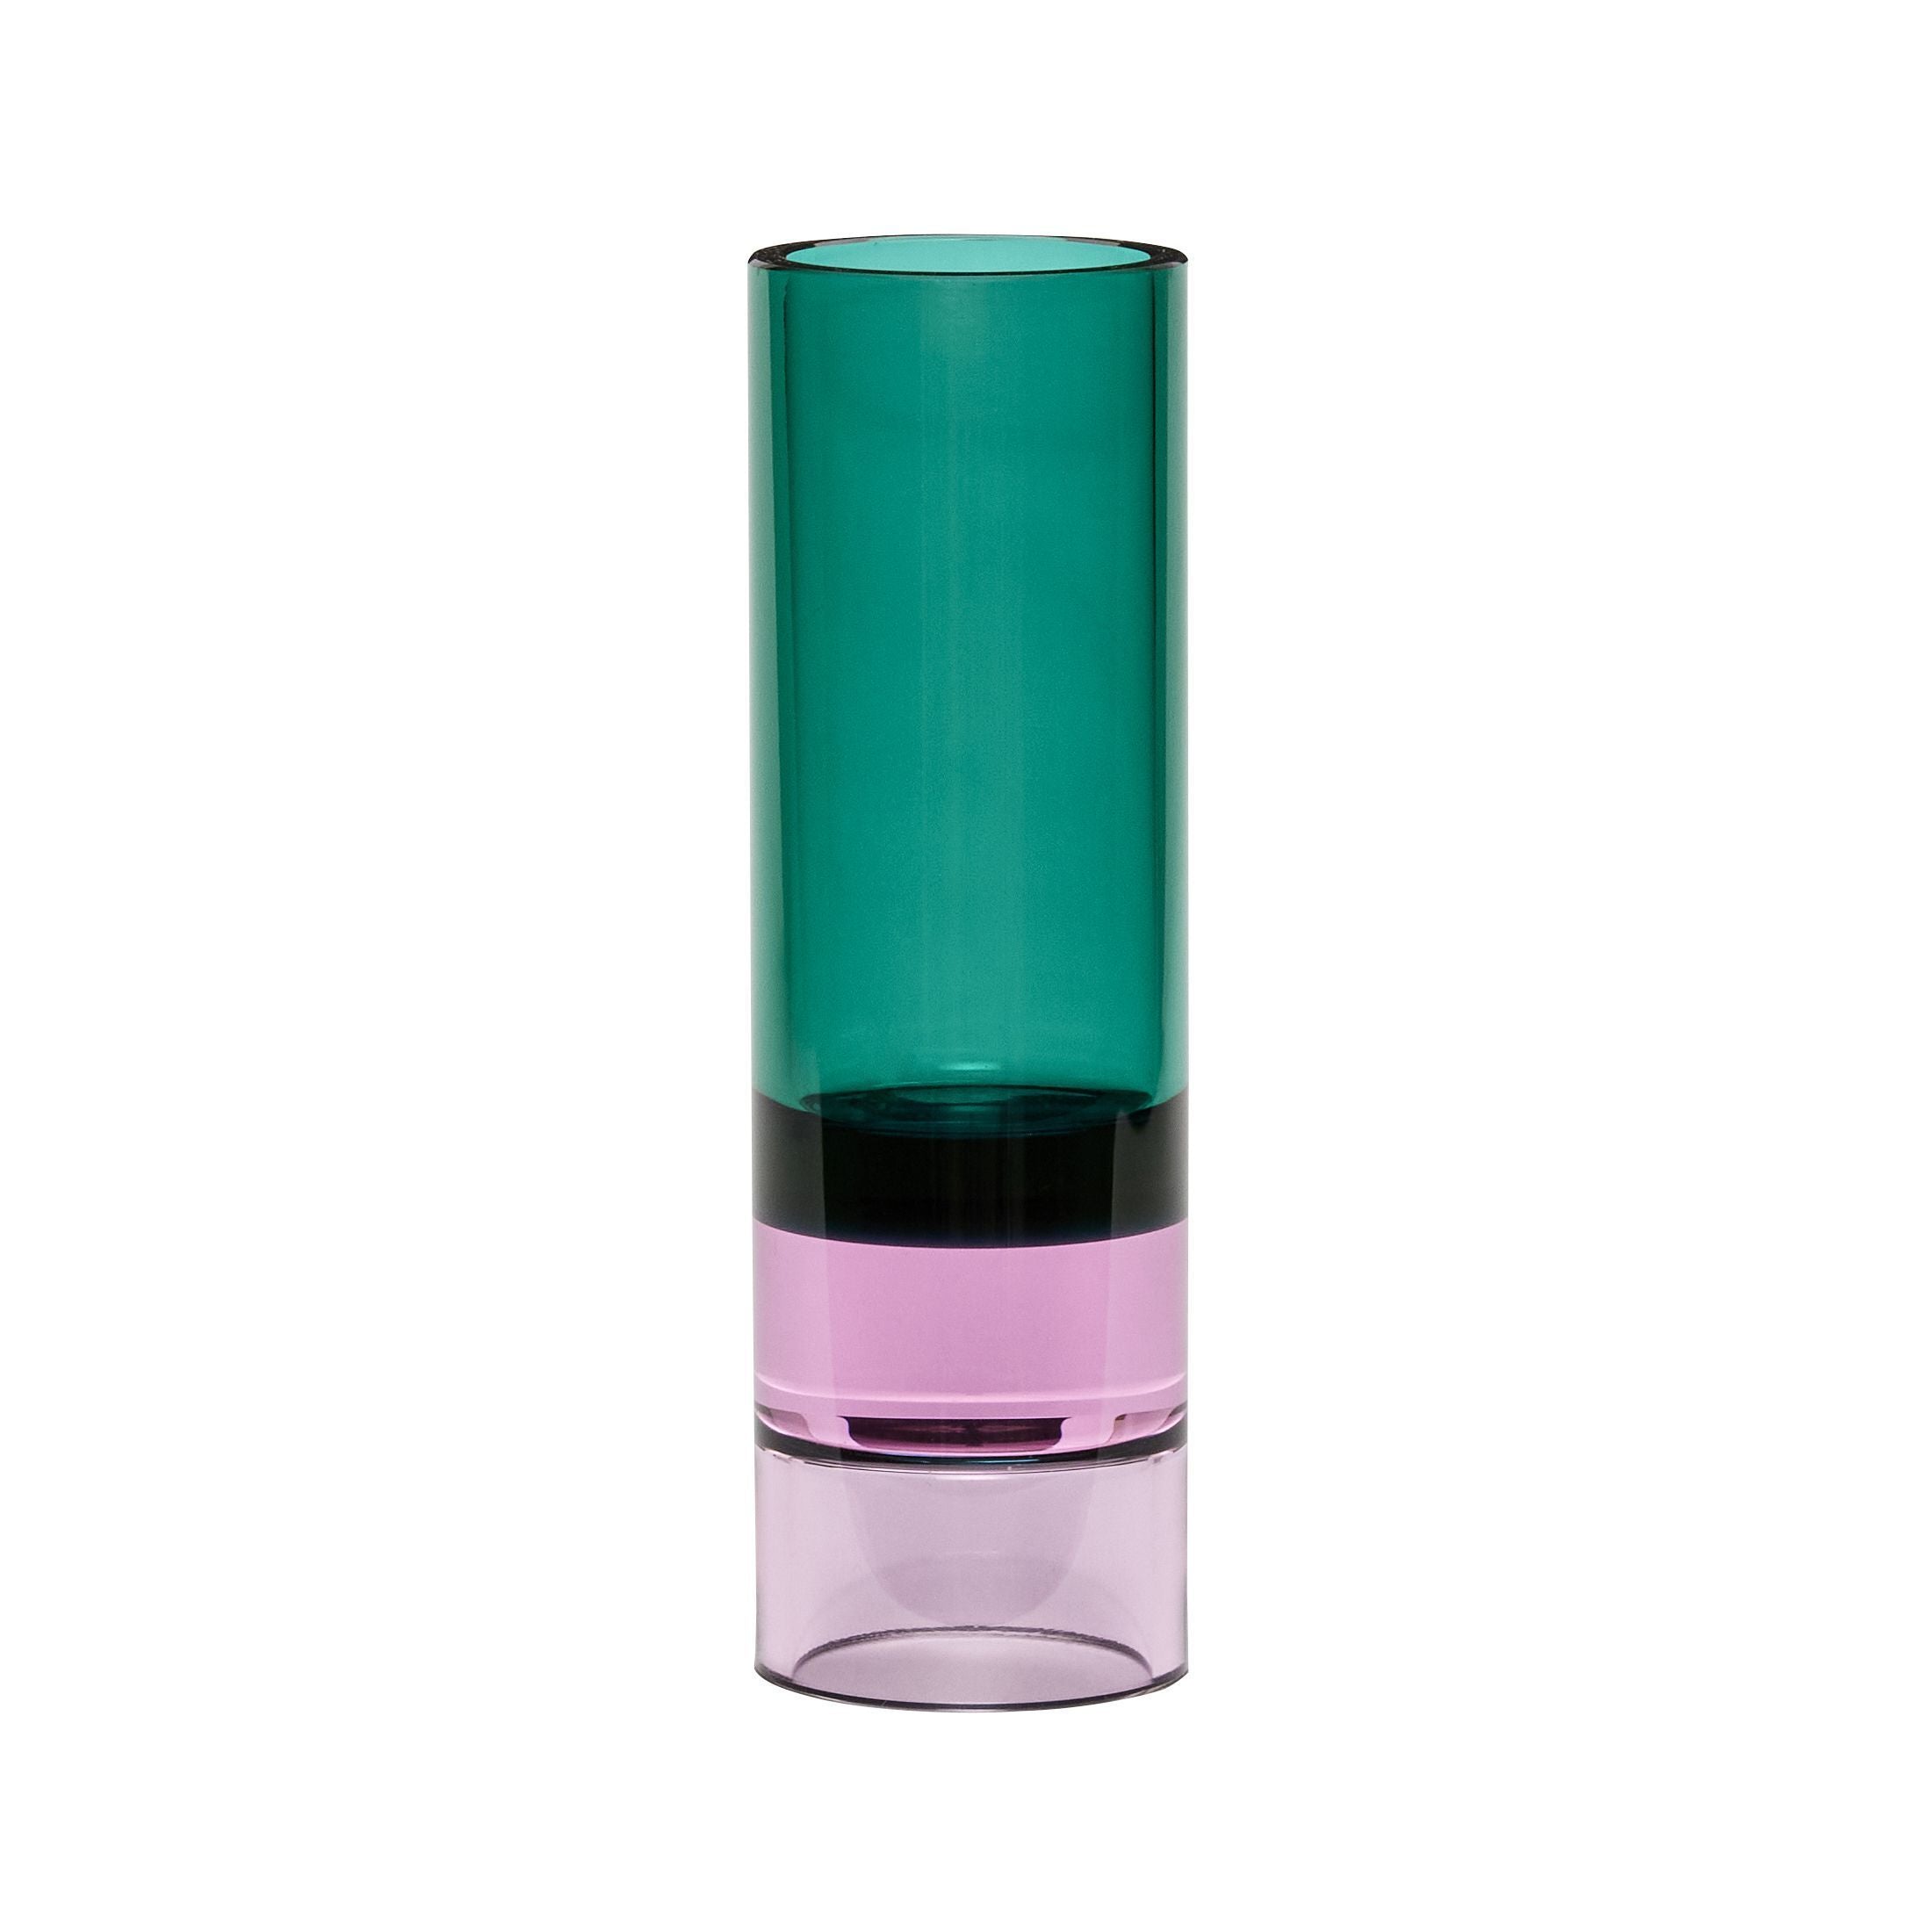 Hübsch Astro Tealight Holder Crystal, grön/rosa